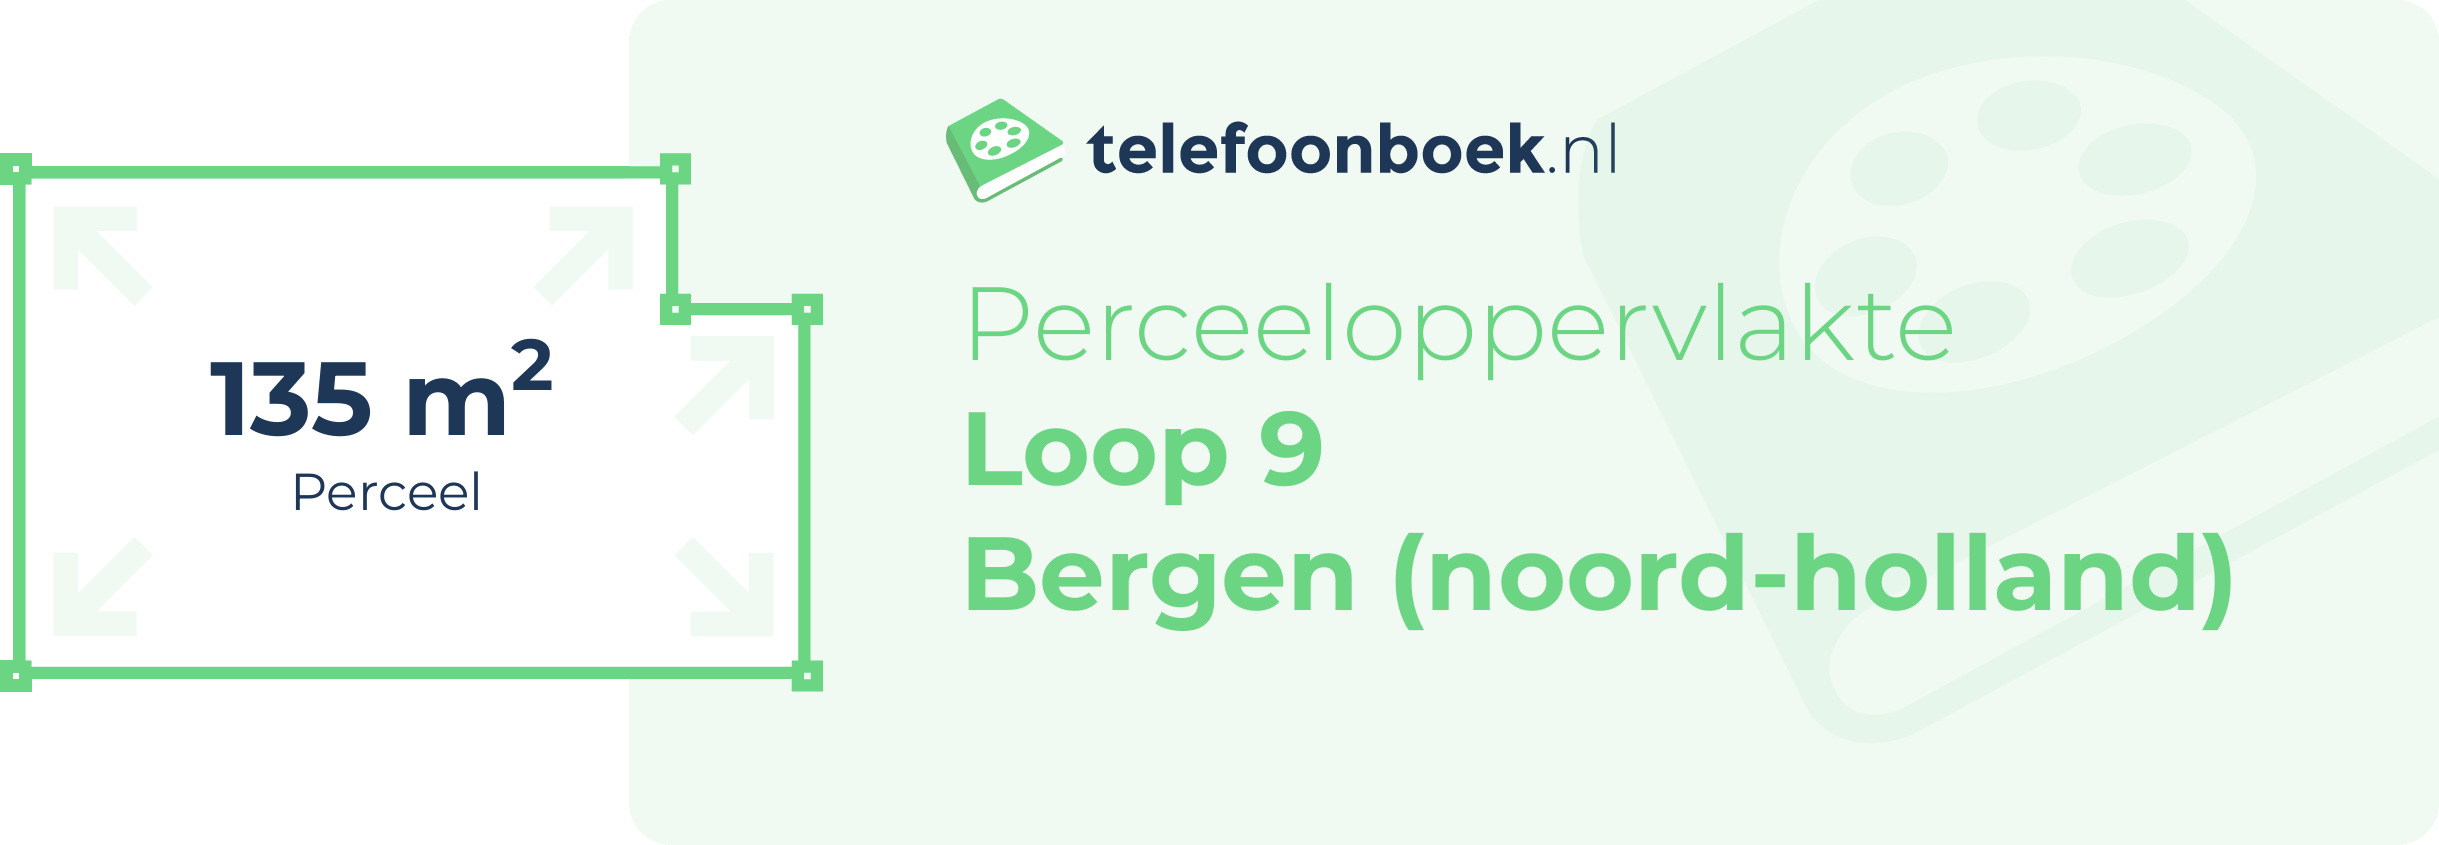 Perceeloppervlakte Loop 9 Bergen (Noord-Holland)